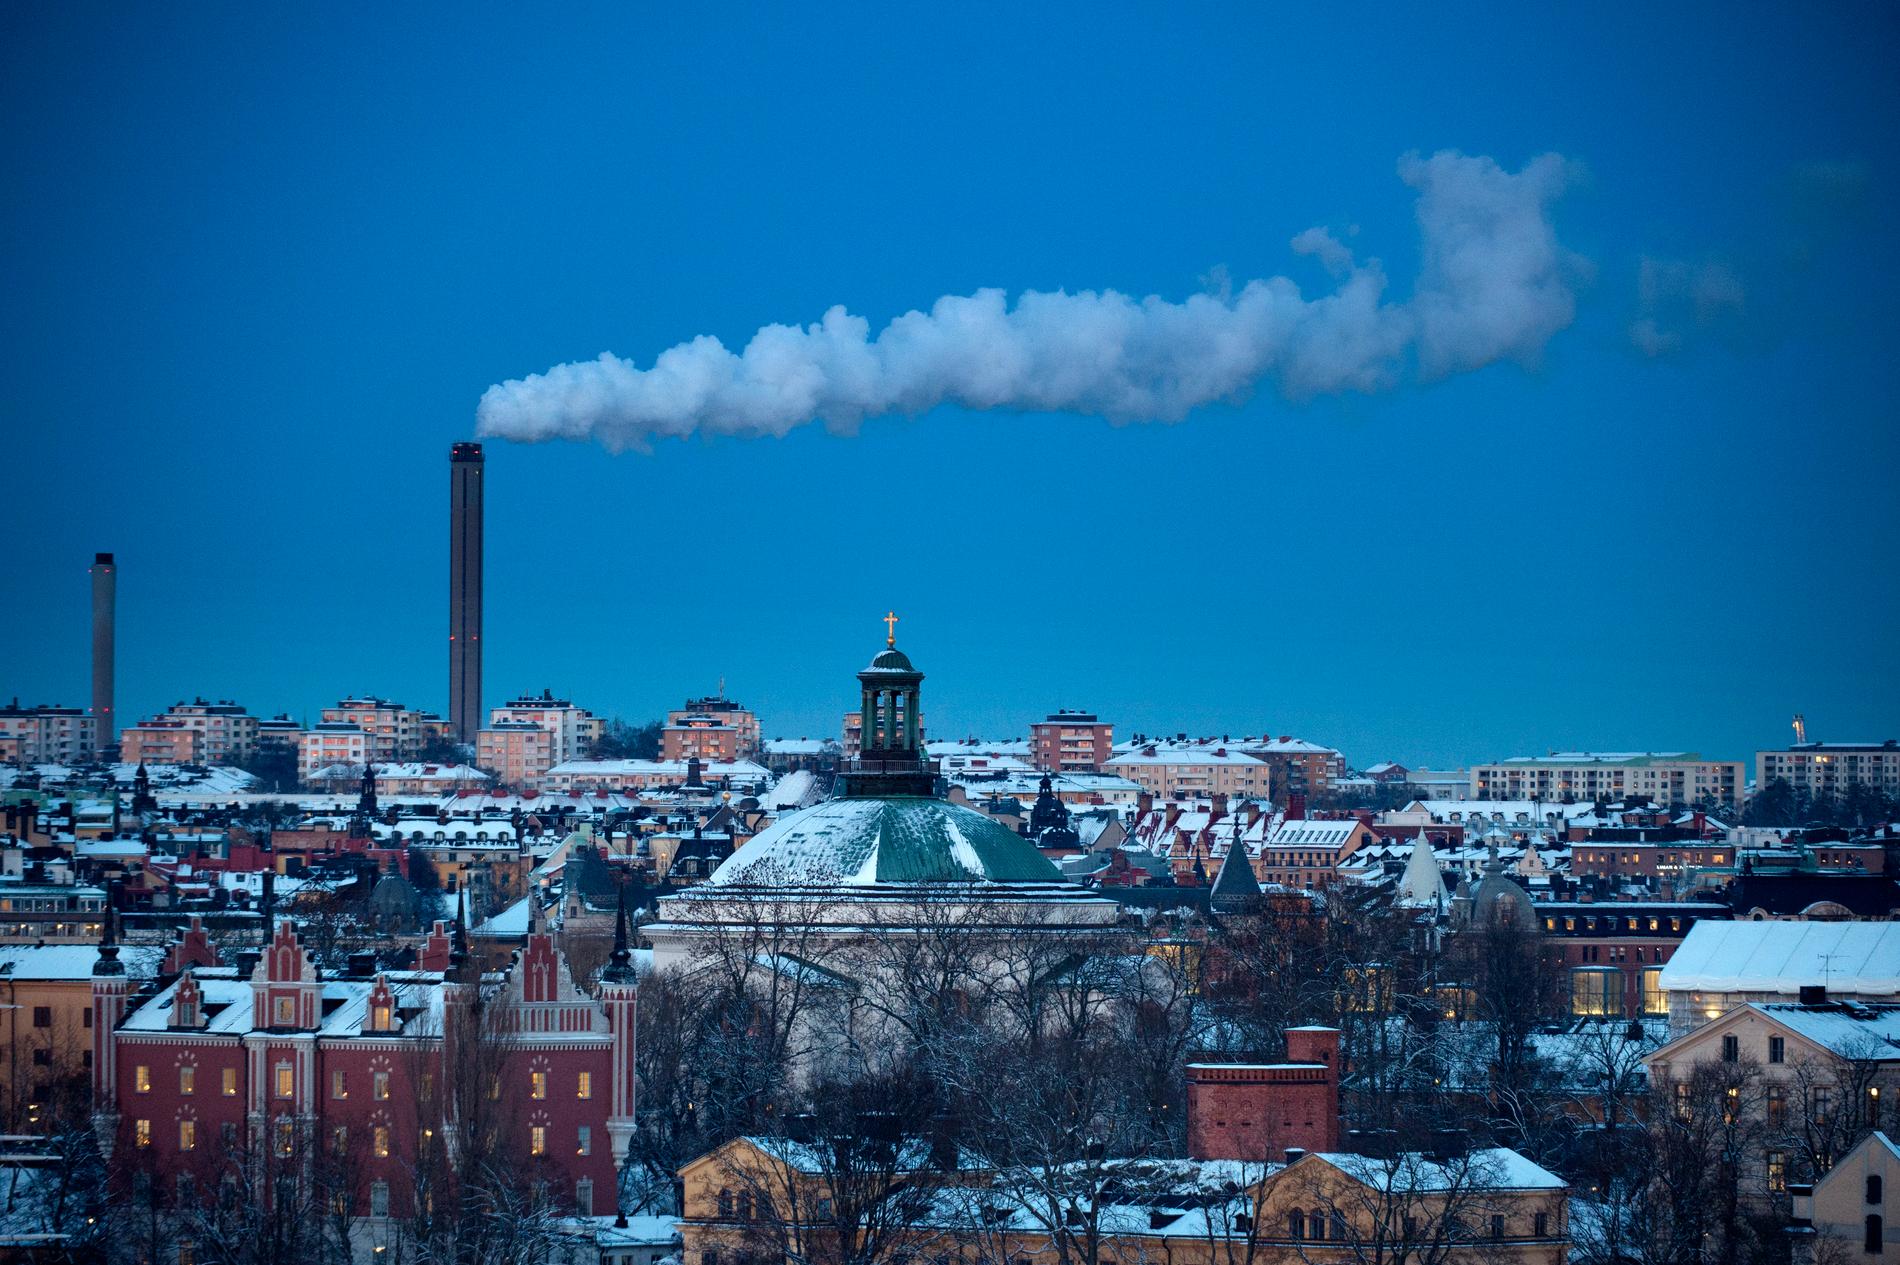 Världsnaturfonden WWF tycker att Sverige borde införa en nationell koldioxidbudget och snabbt minska sina utsläpp. Arkivbild.